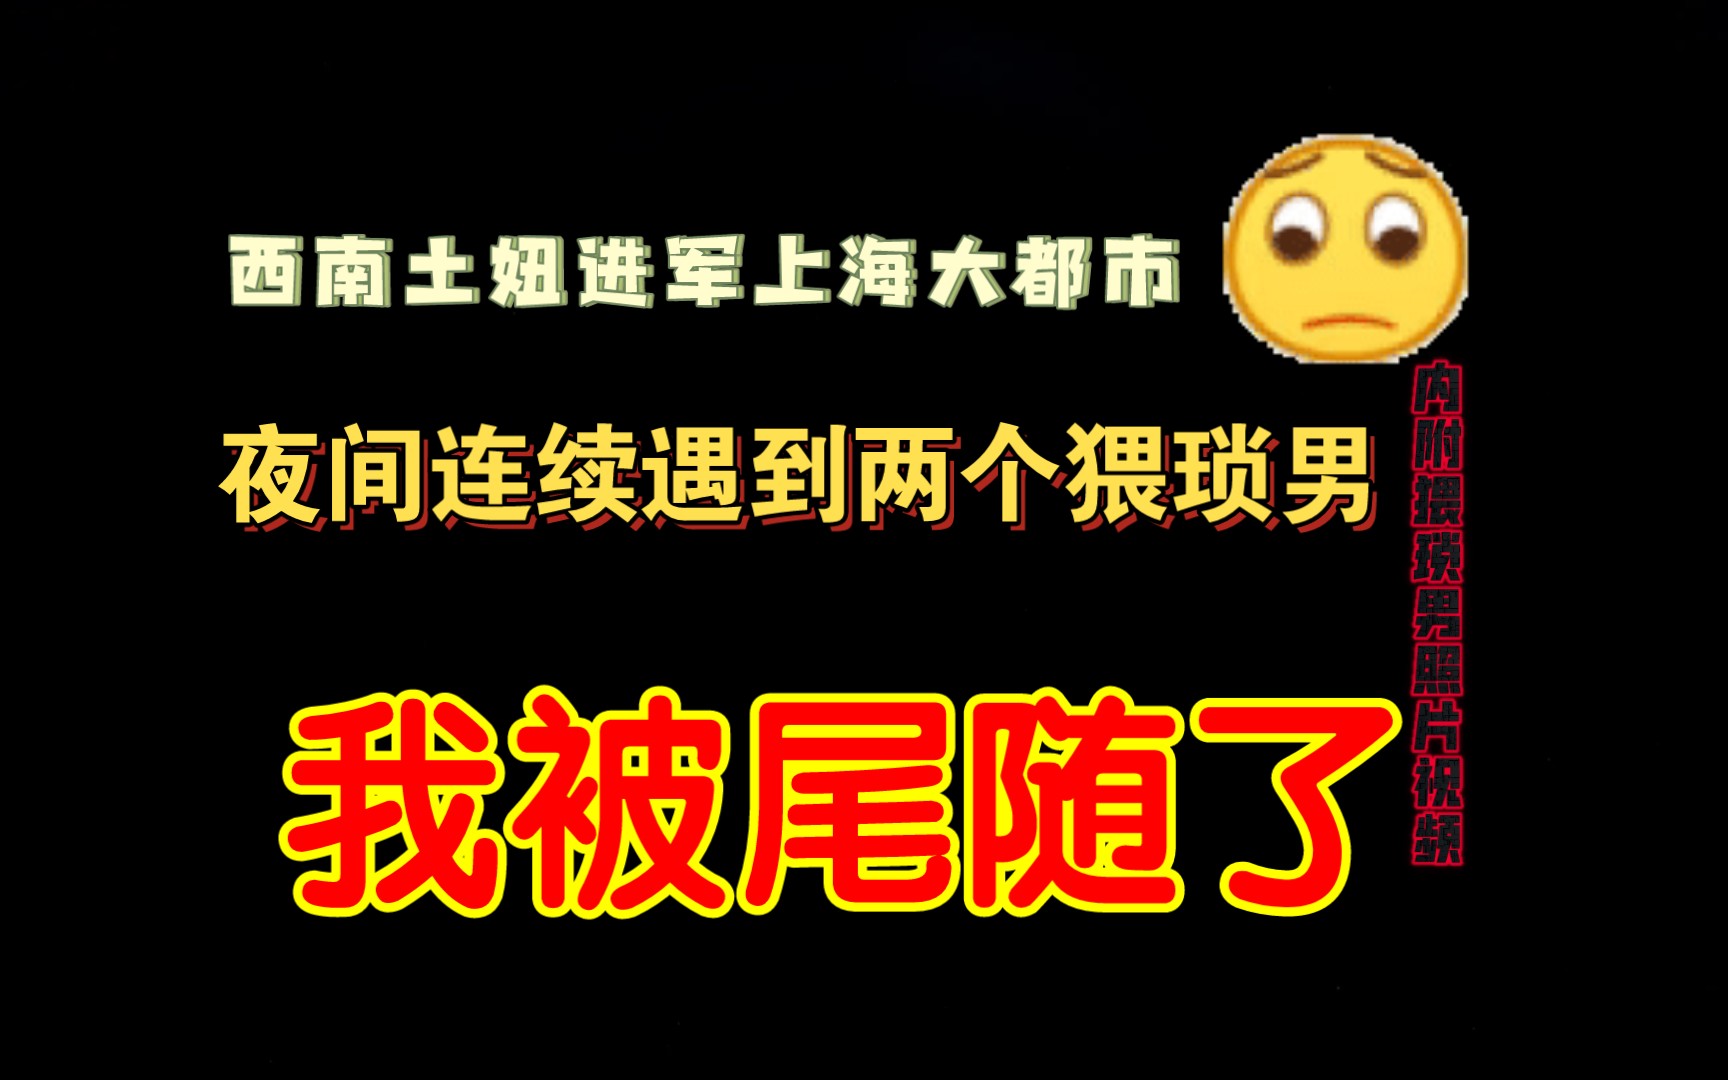 广西柳州一男子涉嫌猥亵儿童 被围观者扇脸踹肚子 - 我们视频 - 新京报网